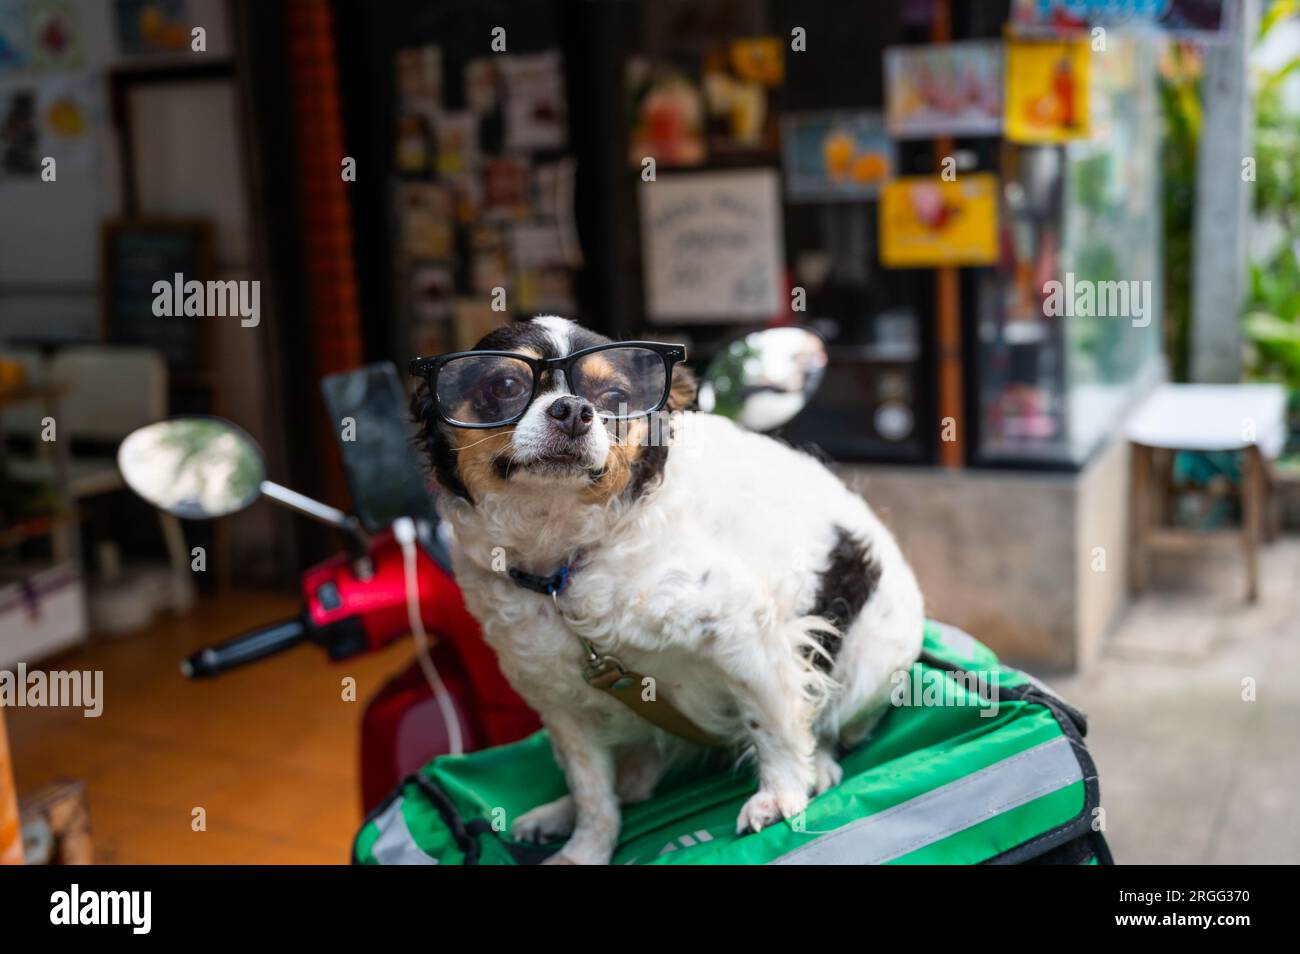 Dog wearing glasses Stock Photo